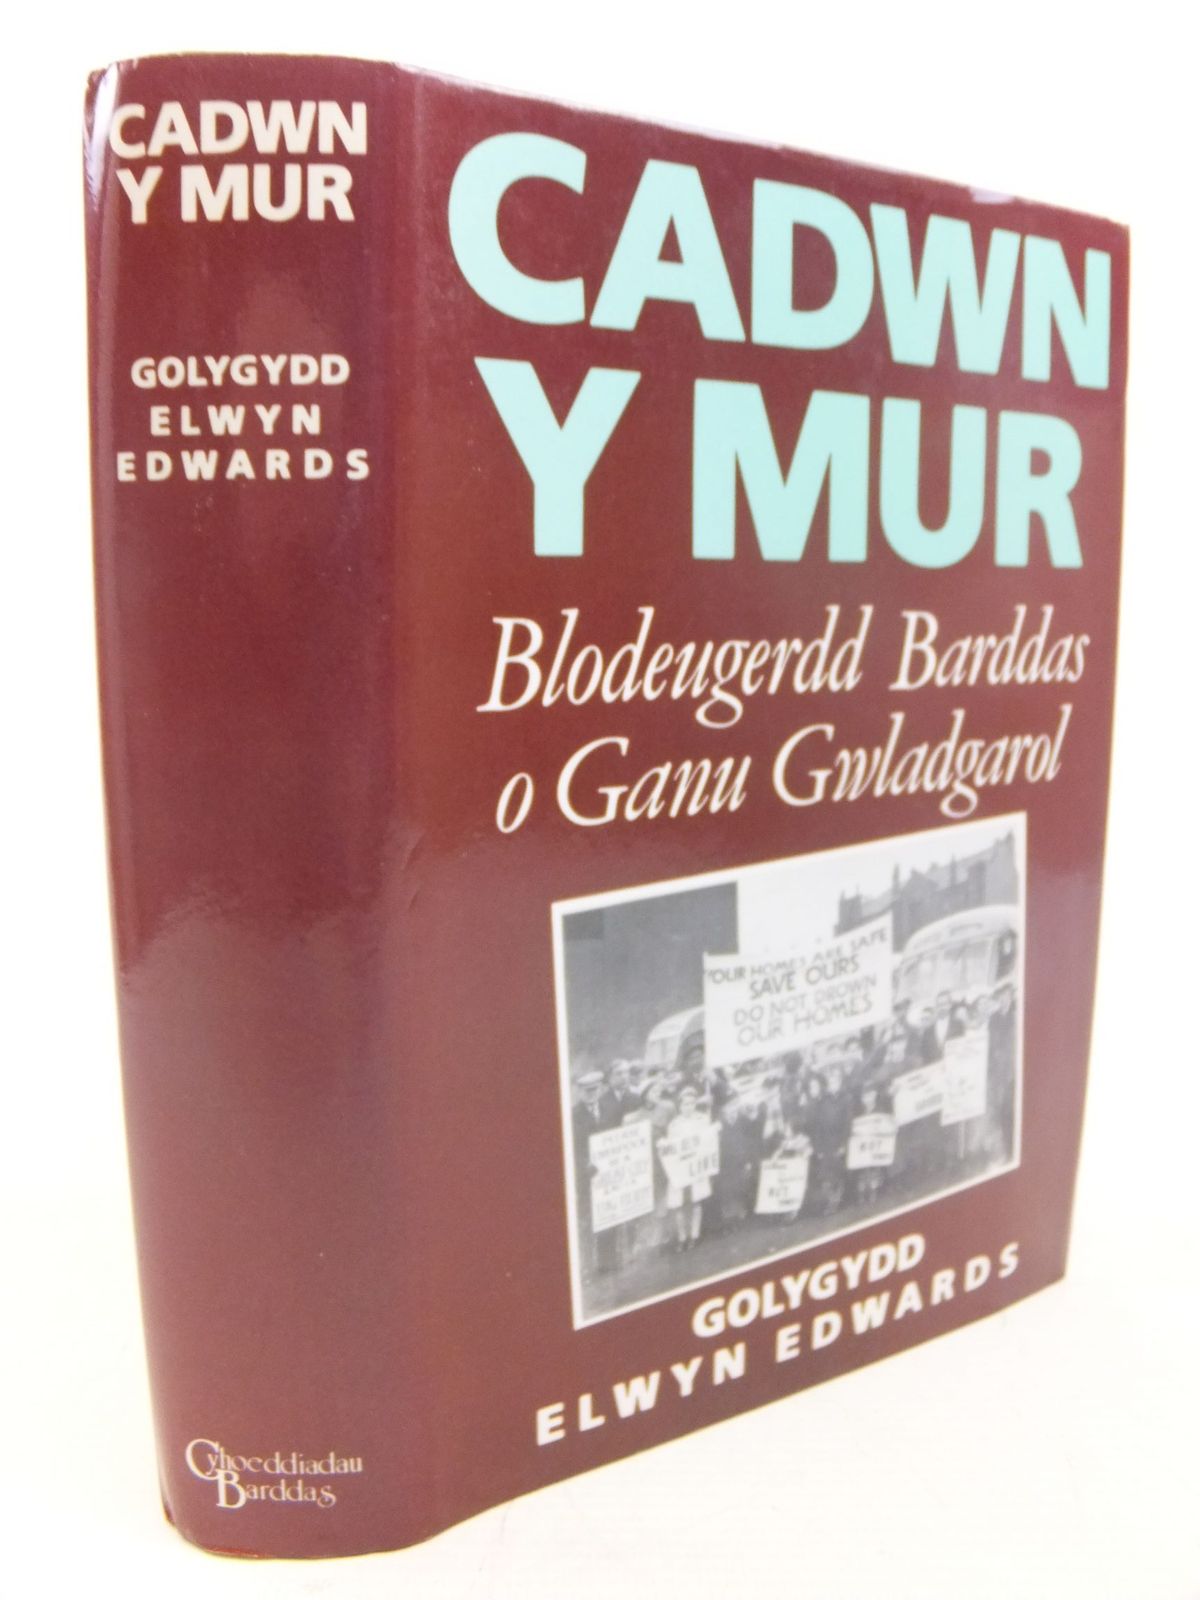 Photo of CADWN Y MUR BLODEUGERDD BARDDAS O GANU GWLADGAROL written by Edwards, Elwyn published by Cyhoeddiadau Barddas (STOCK CODE: 1712730)  for sale by Stella & Rose's Books